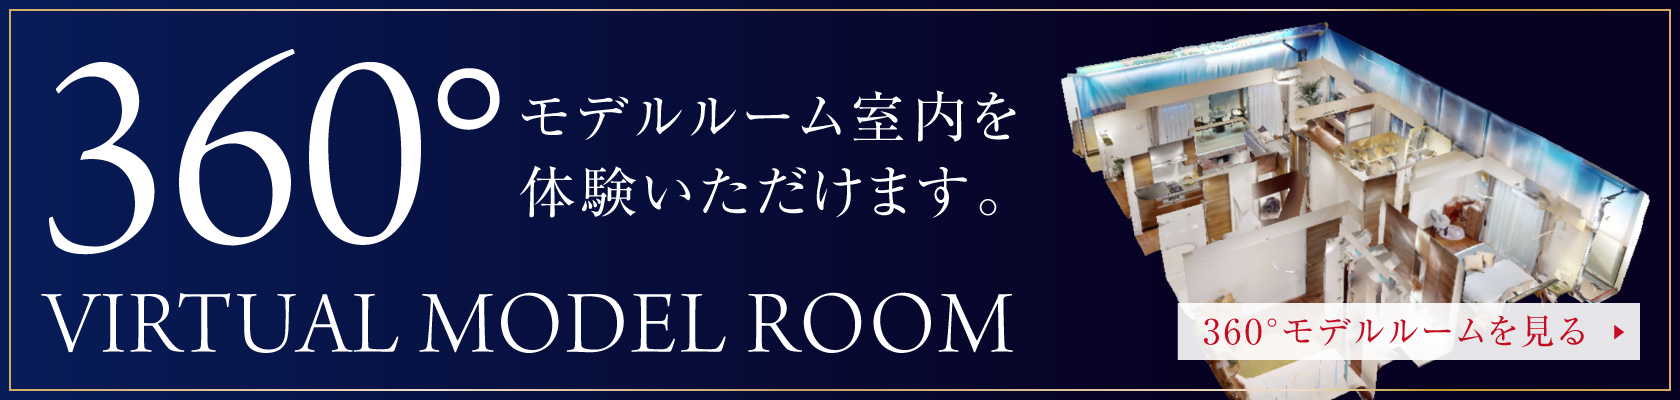 VIRTUAL MODEL ROOM
                  360度モデルルーム室内を体験いただけます。